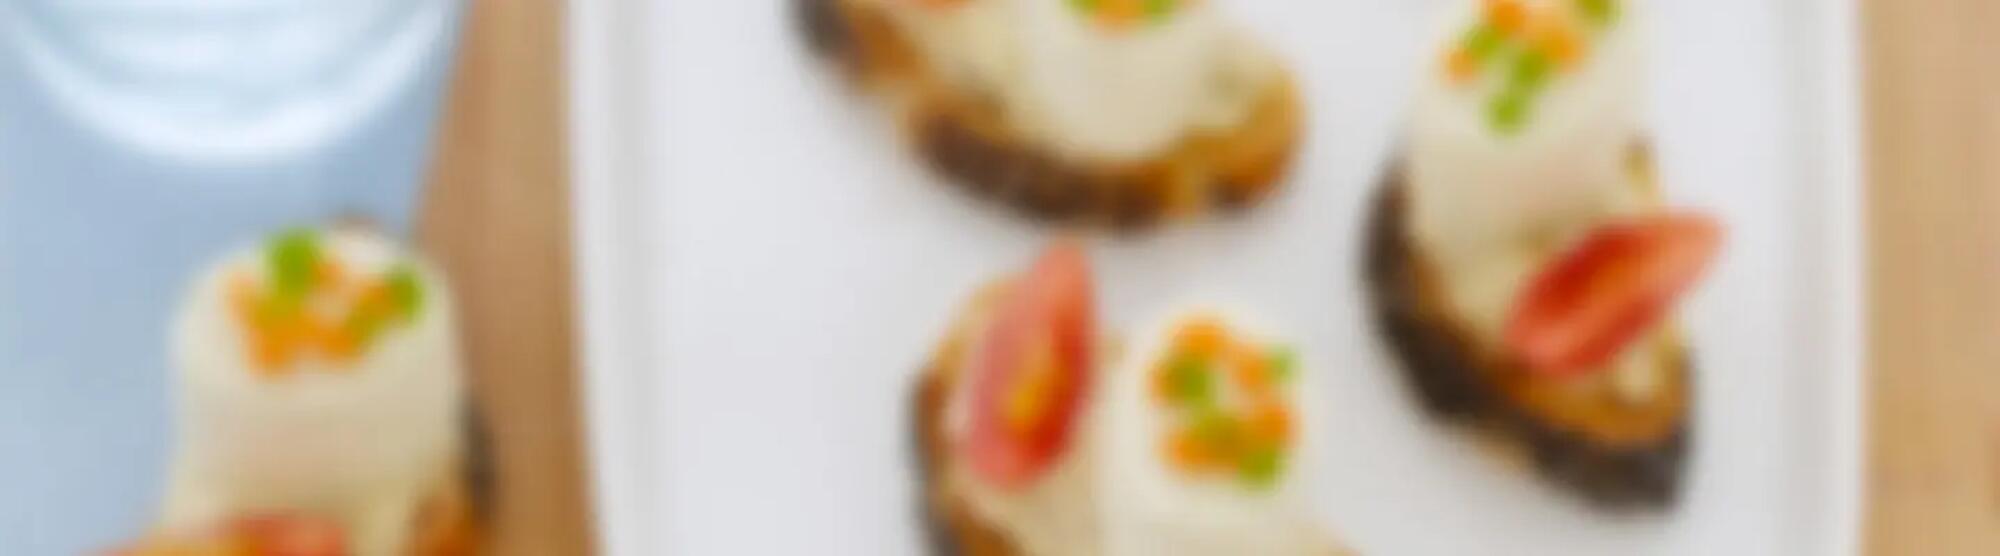 Recette : Bruschetta au caviar d’aubergine, fromage frais pesto